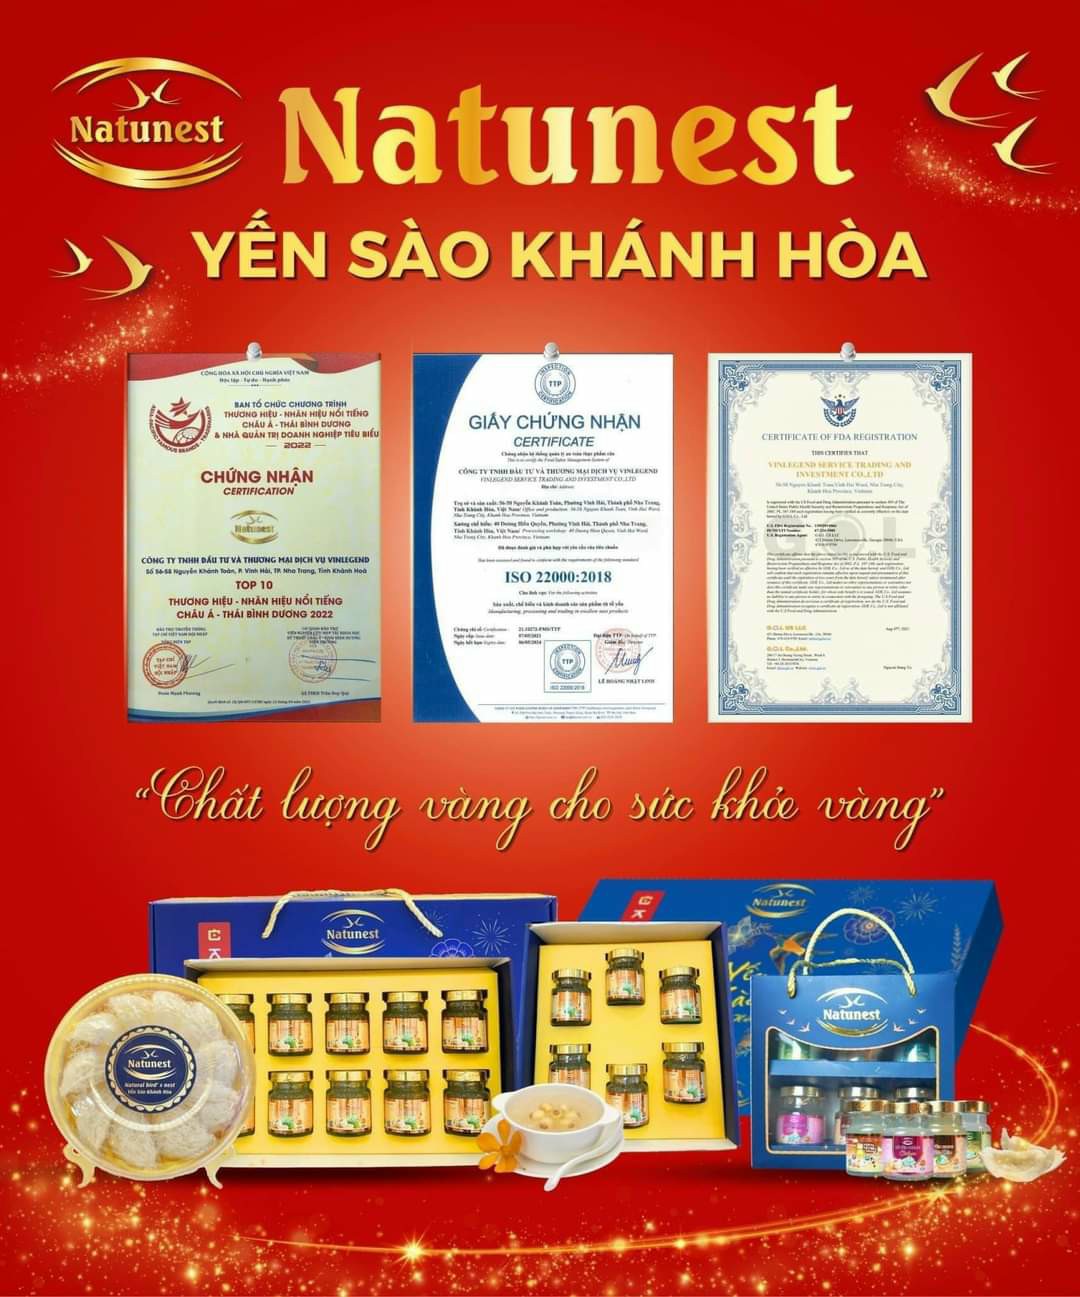 Natunest - chất lượng vàng cho sức khỏe vàng